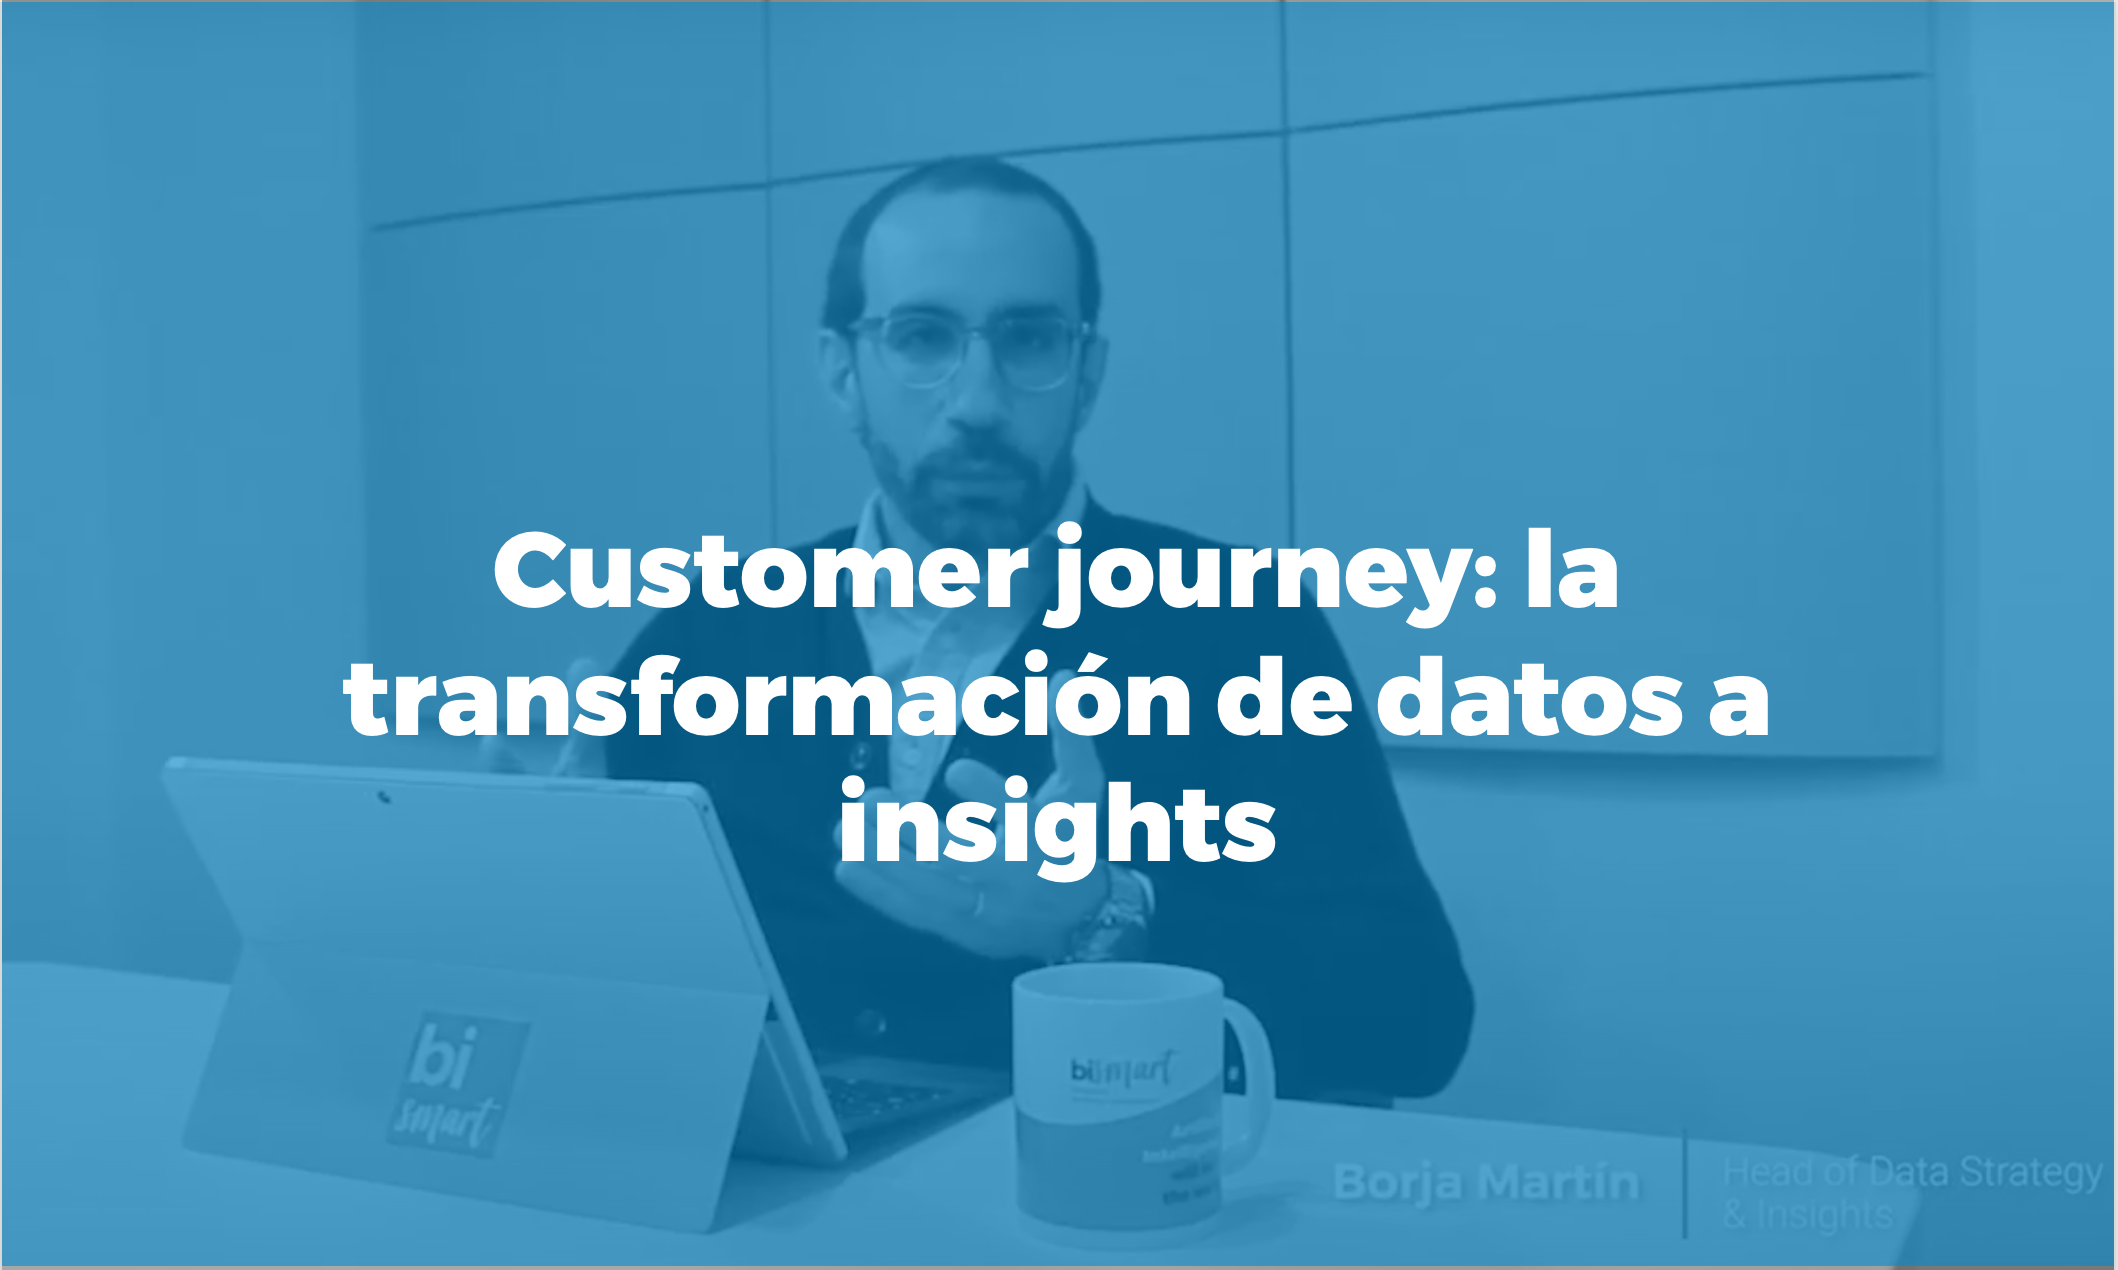 Píndola formativa customer journey: transforma les dades en insights